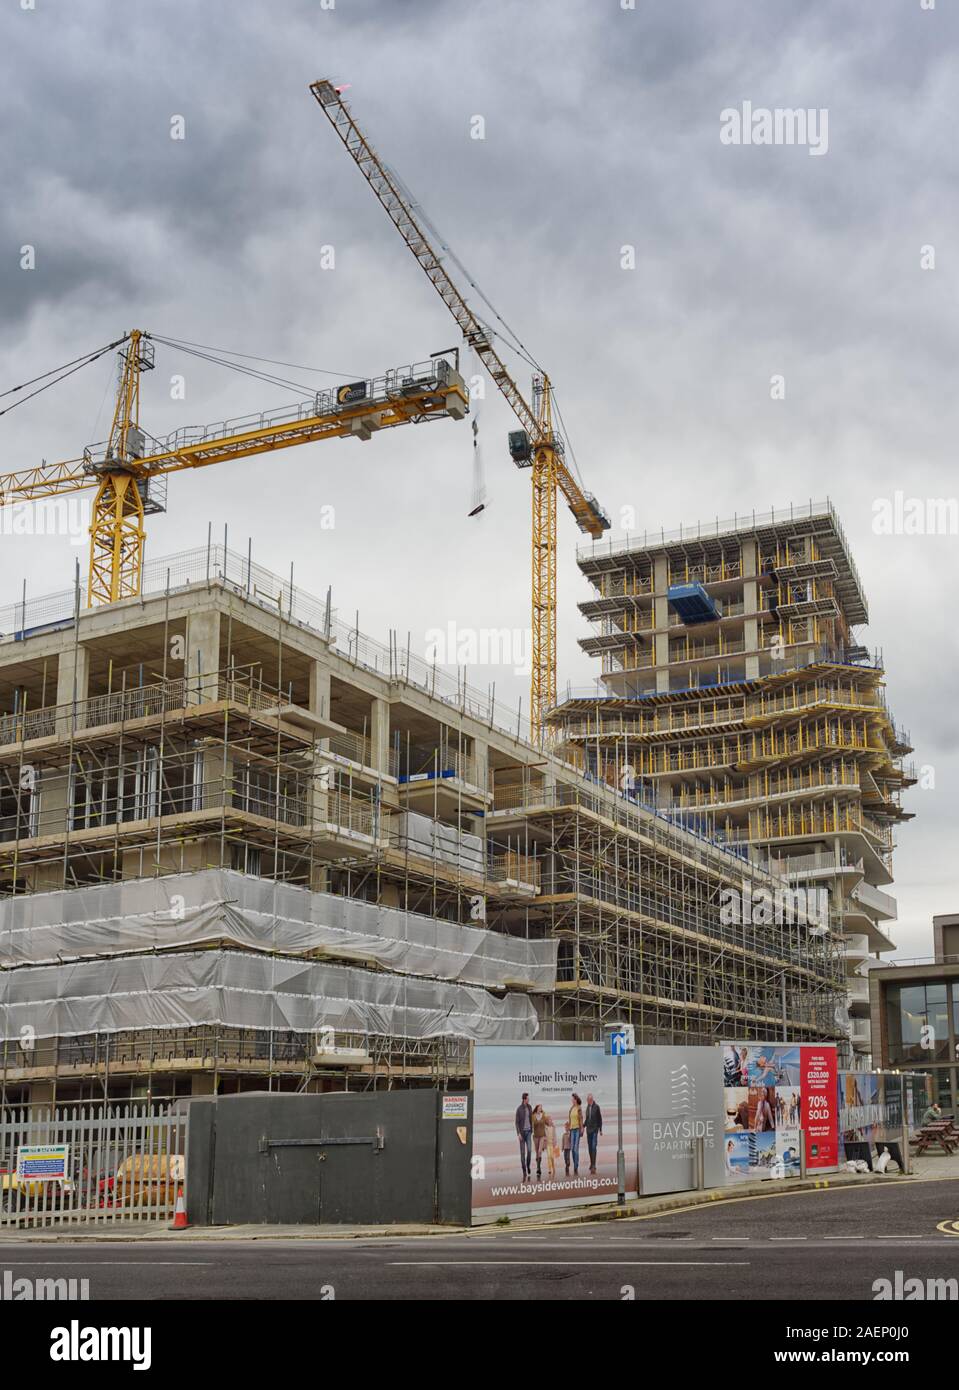 La construction d'appartements Bayside sur le front de mer à Worthing, West Sussex, Angleterre, Royaume-Uni Banque D'Images